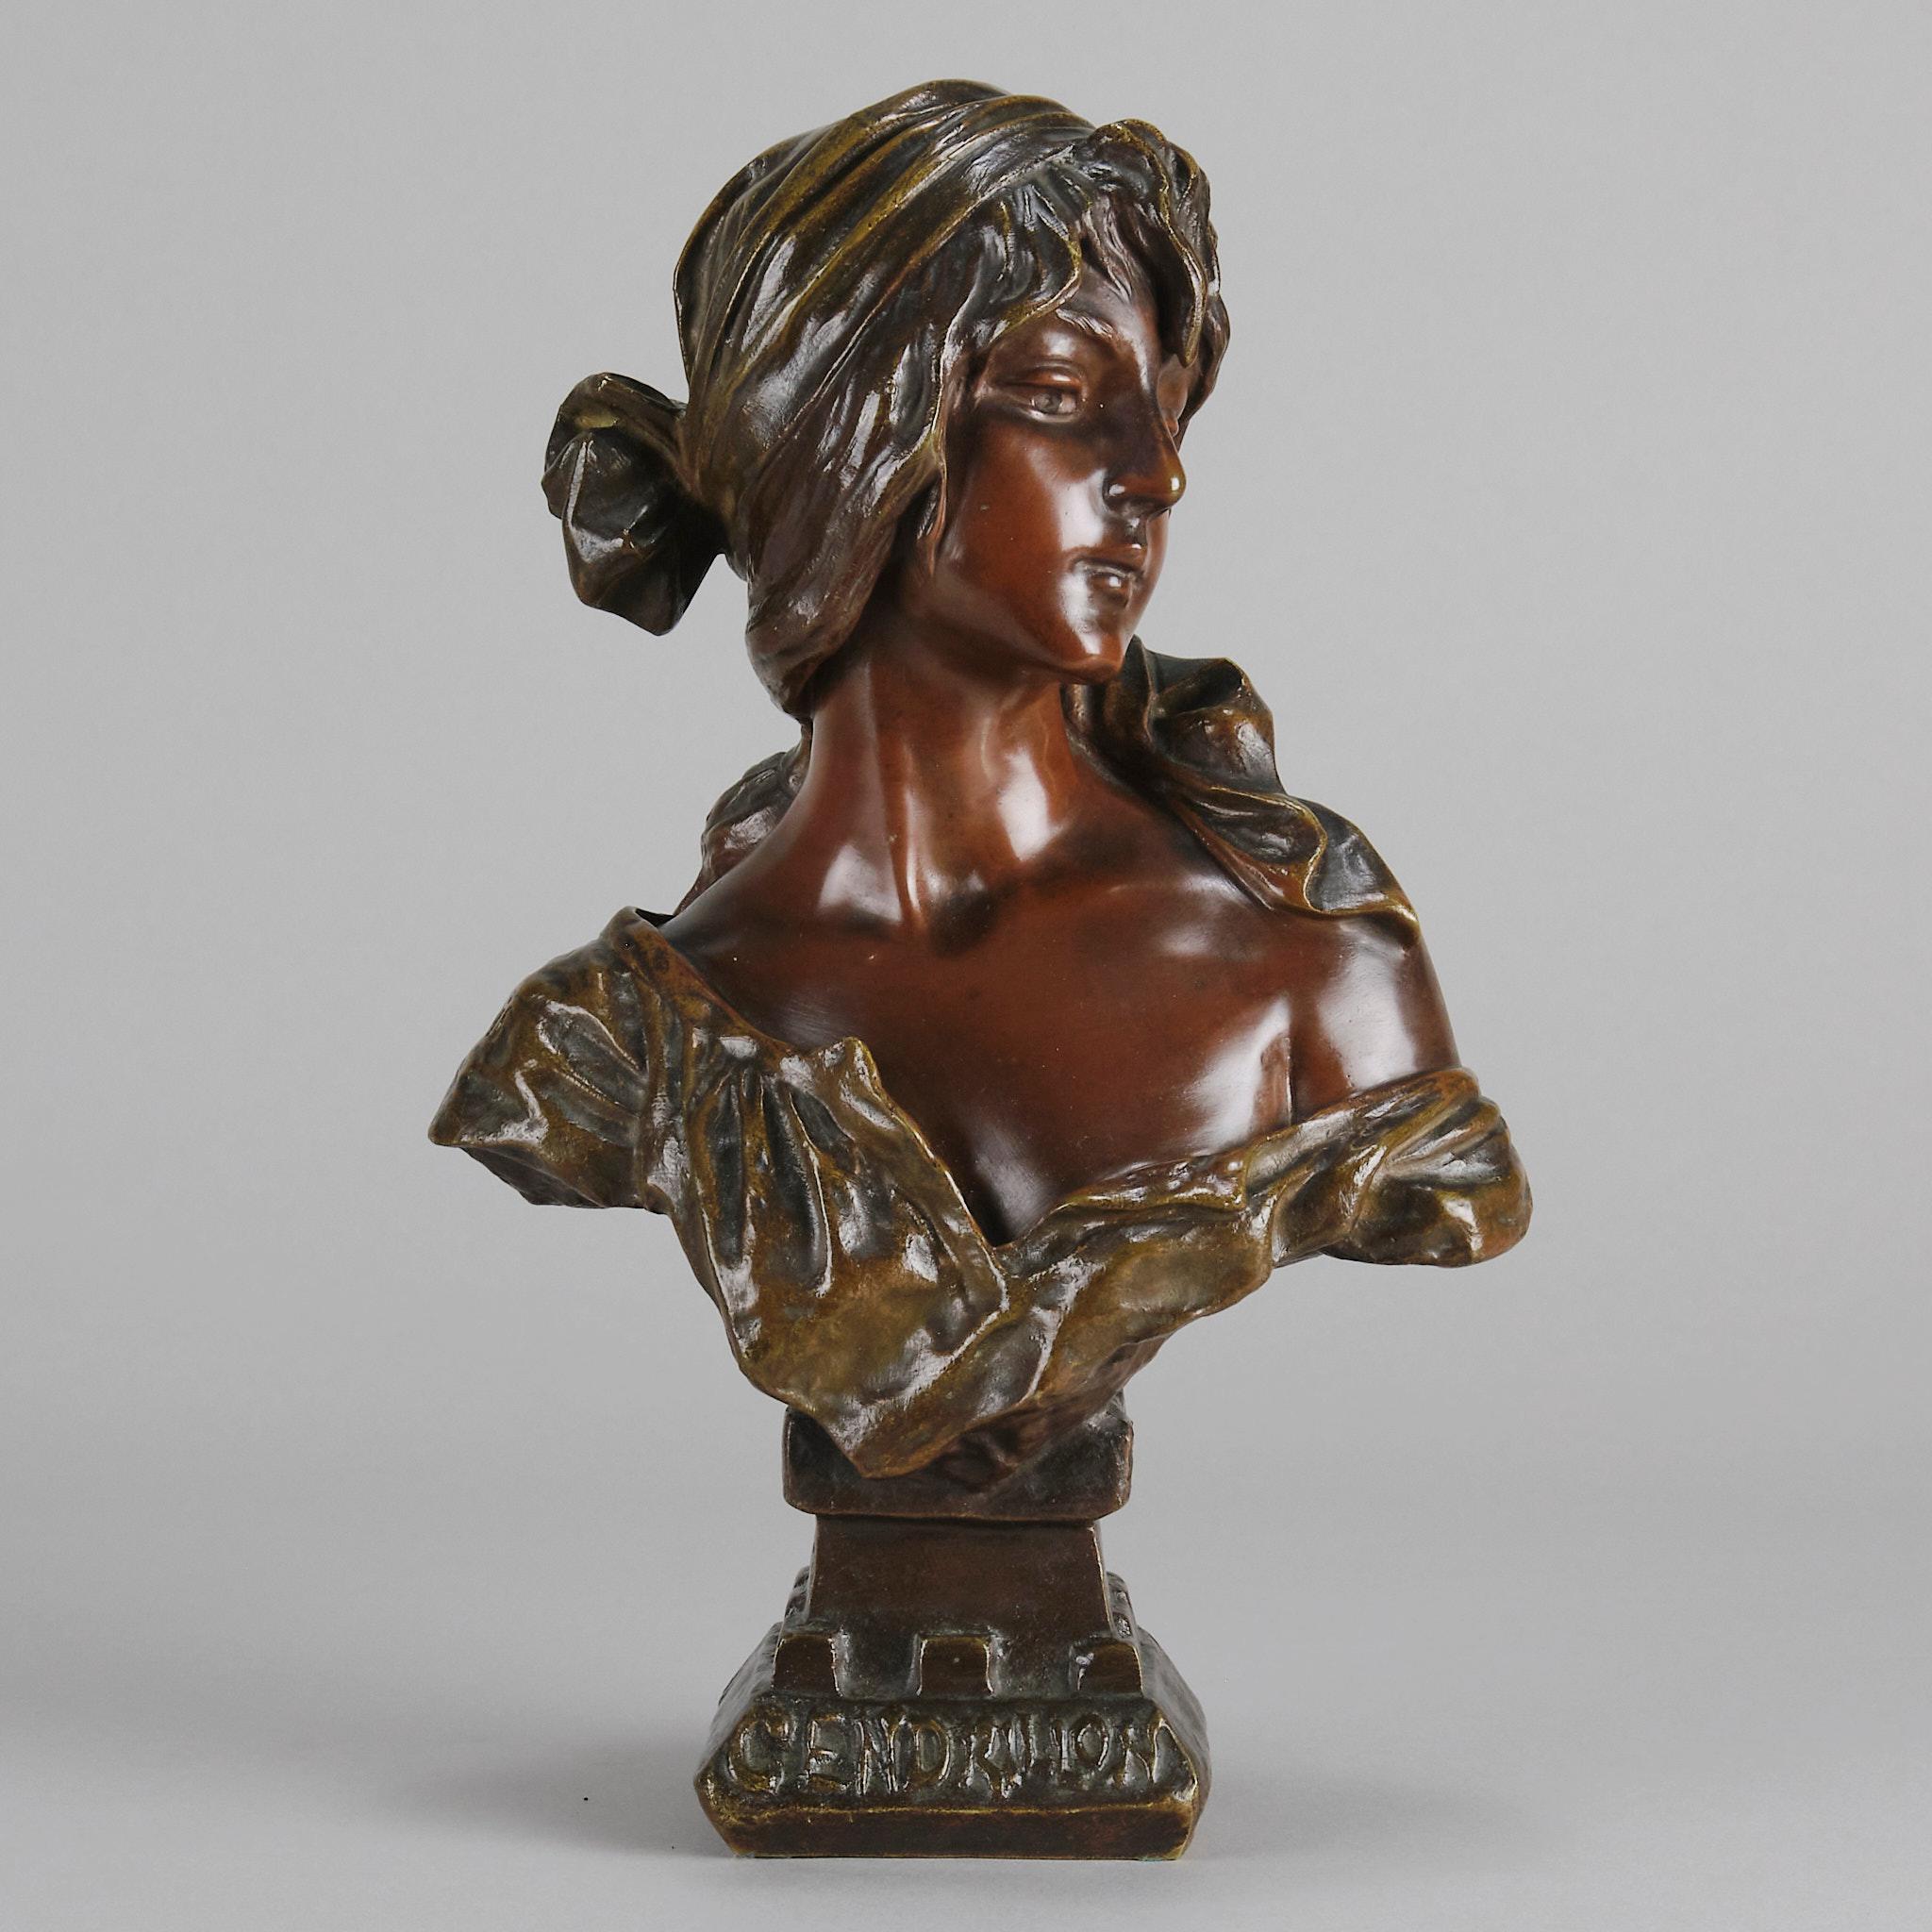 Magnifique buste en bronze français de la fin du XIXe siècle, de style Art nouveau, présentant une patine profonde et multicolore et d'excellents détails. Le beau personnage portant une robe de tête et un chemisier amplement drapé représente